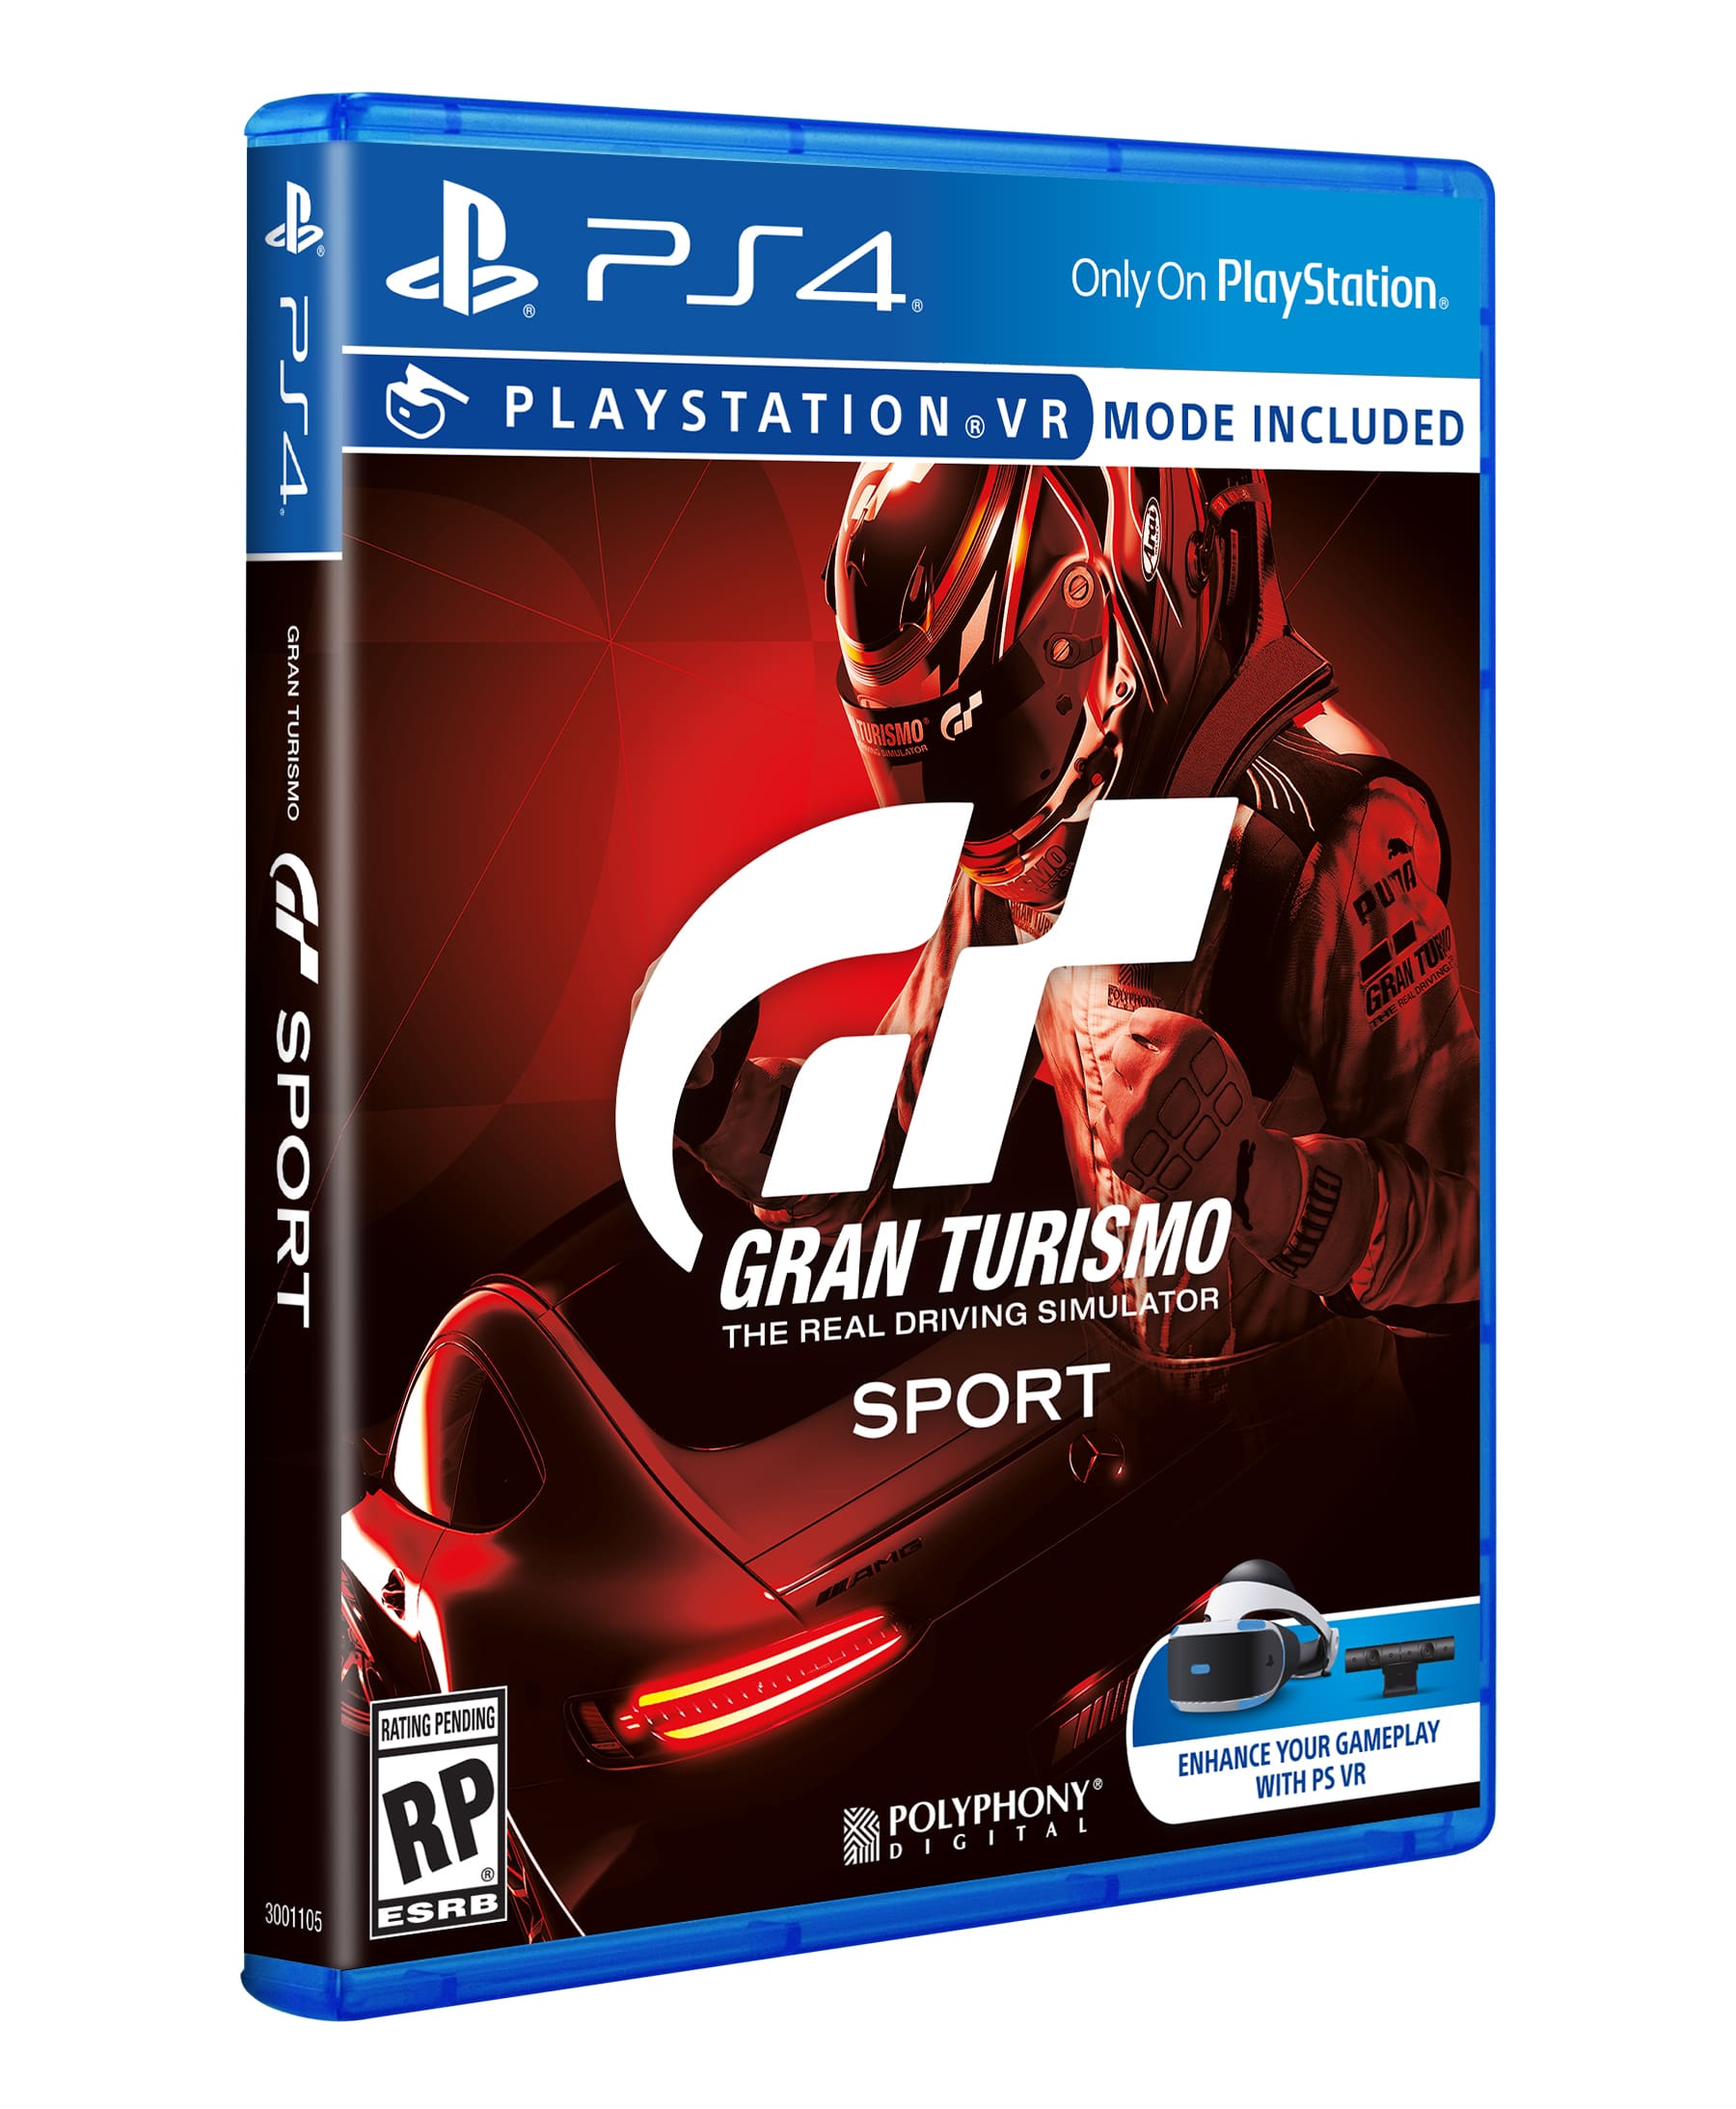 Диск игра для плейстейшен. Gran Turismo Sony PLAYSTATION 4. Sony Gran Turismo Sport (ps4). Gran Turismo диск пс4. Gran Turismo Sport VR ps4.